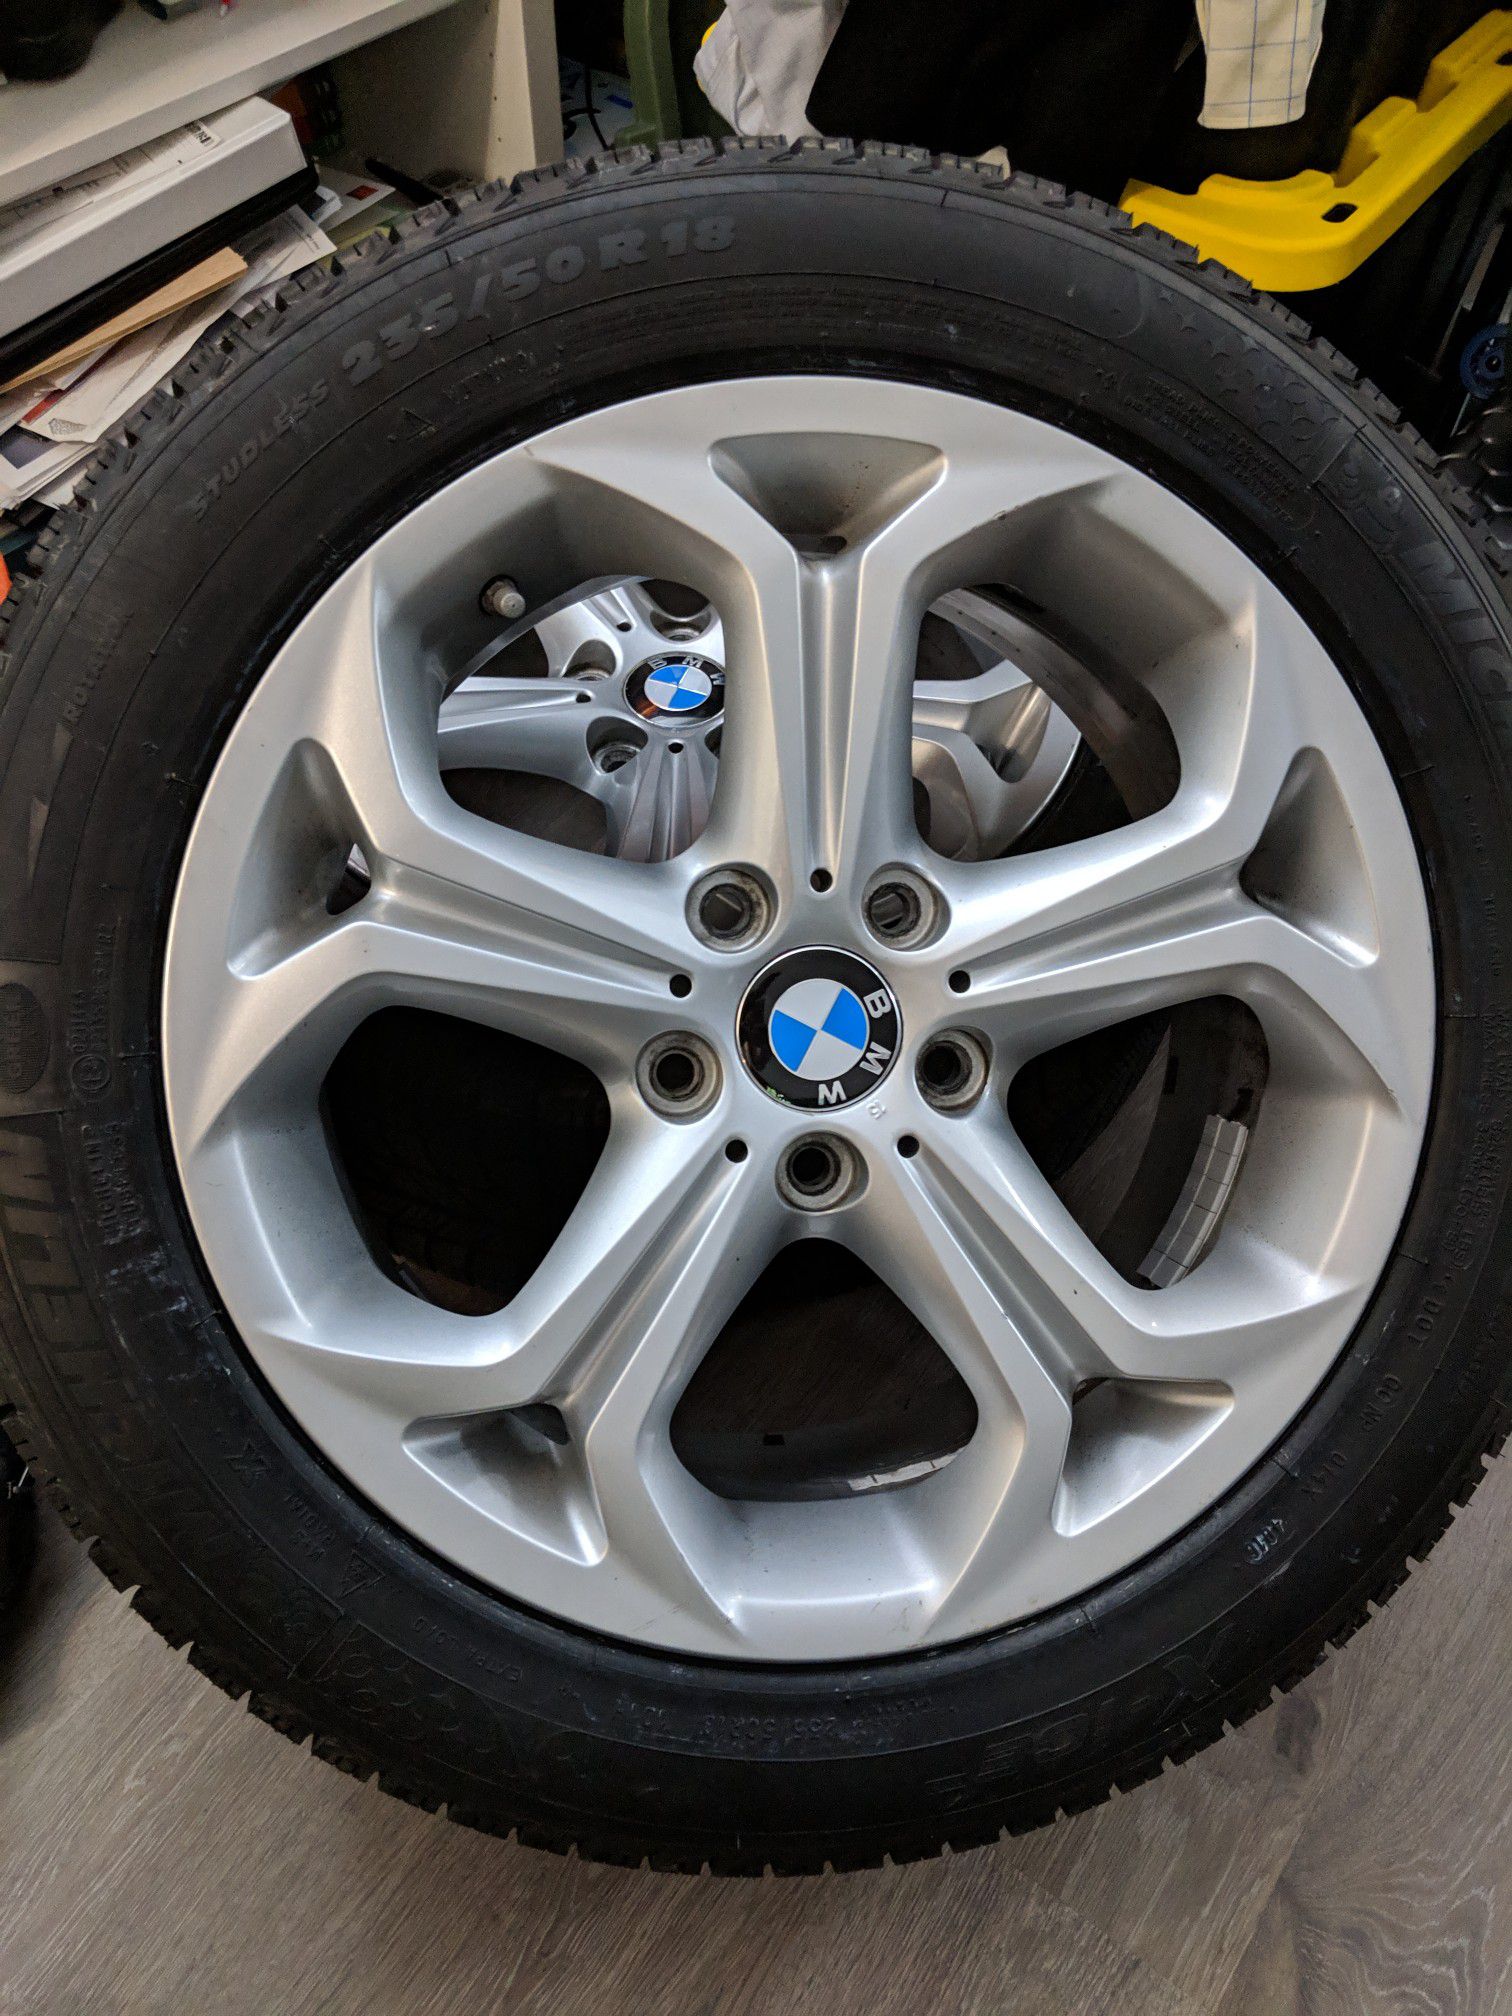 BMW X3 OEM wheels 18" w/ Michelin X-Ice Tires